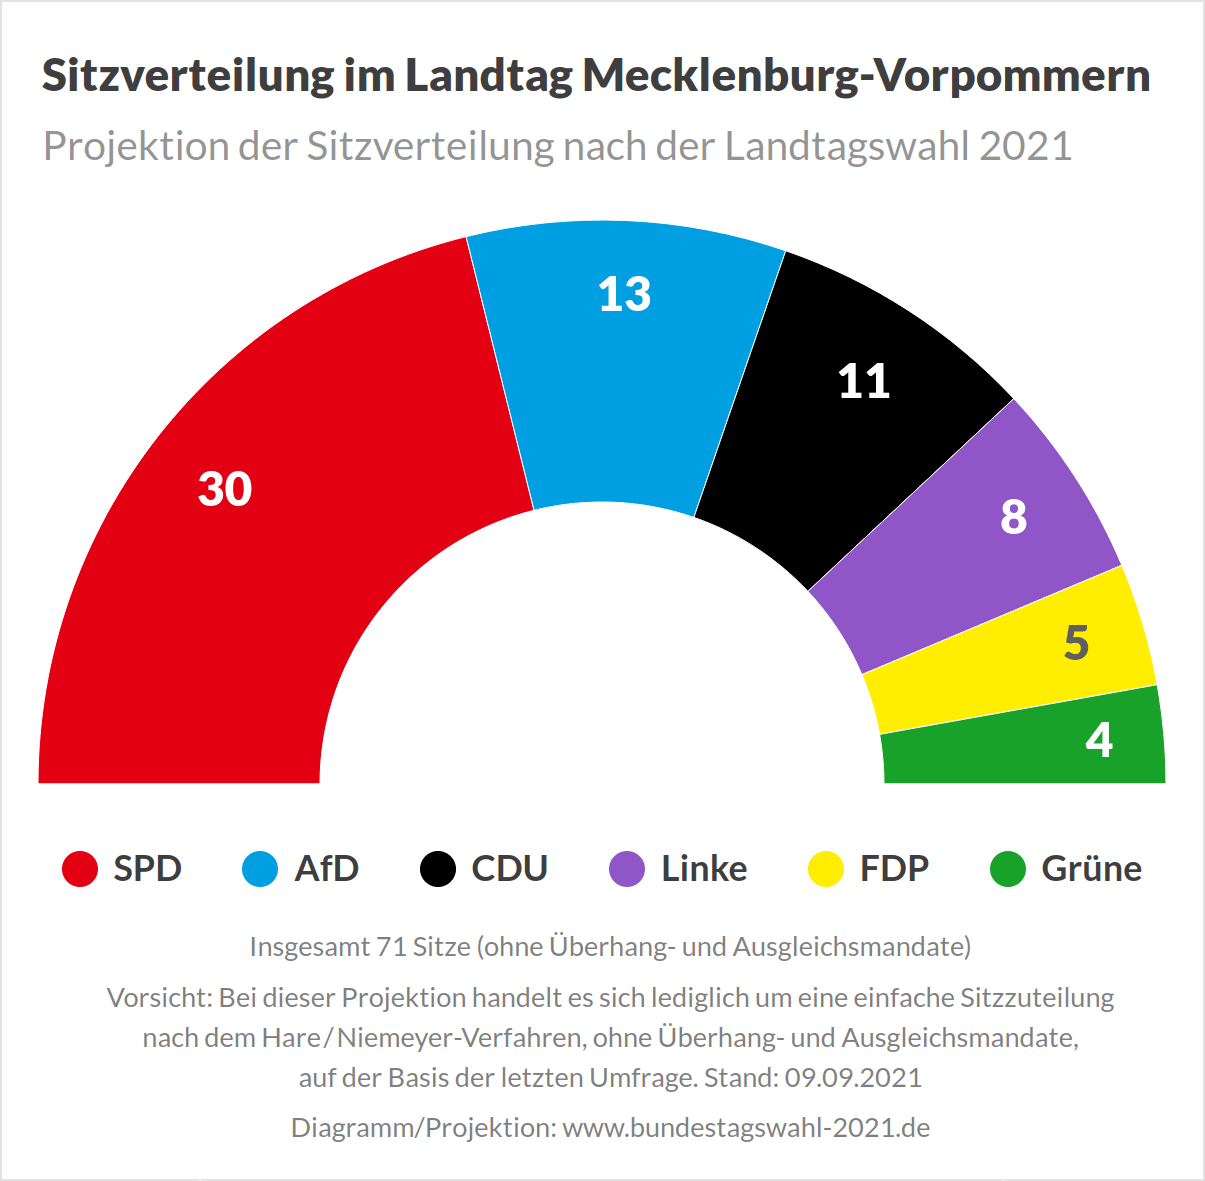 Sitzverteilung im Landtag Mecklenburg-Vorpommern nach der Landtagswahl 2021 (Projektion)